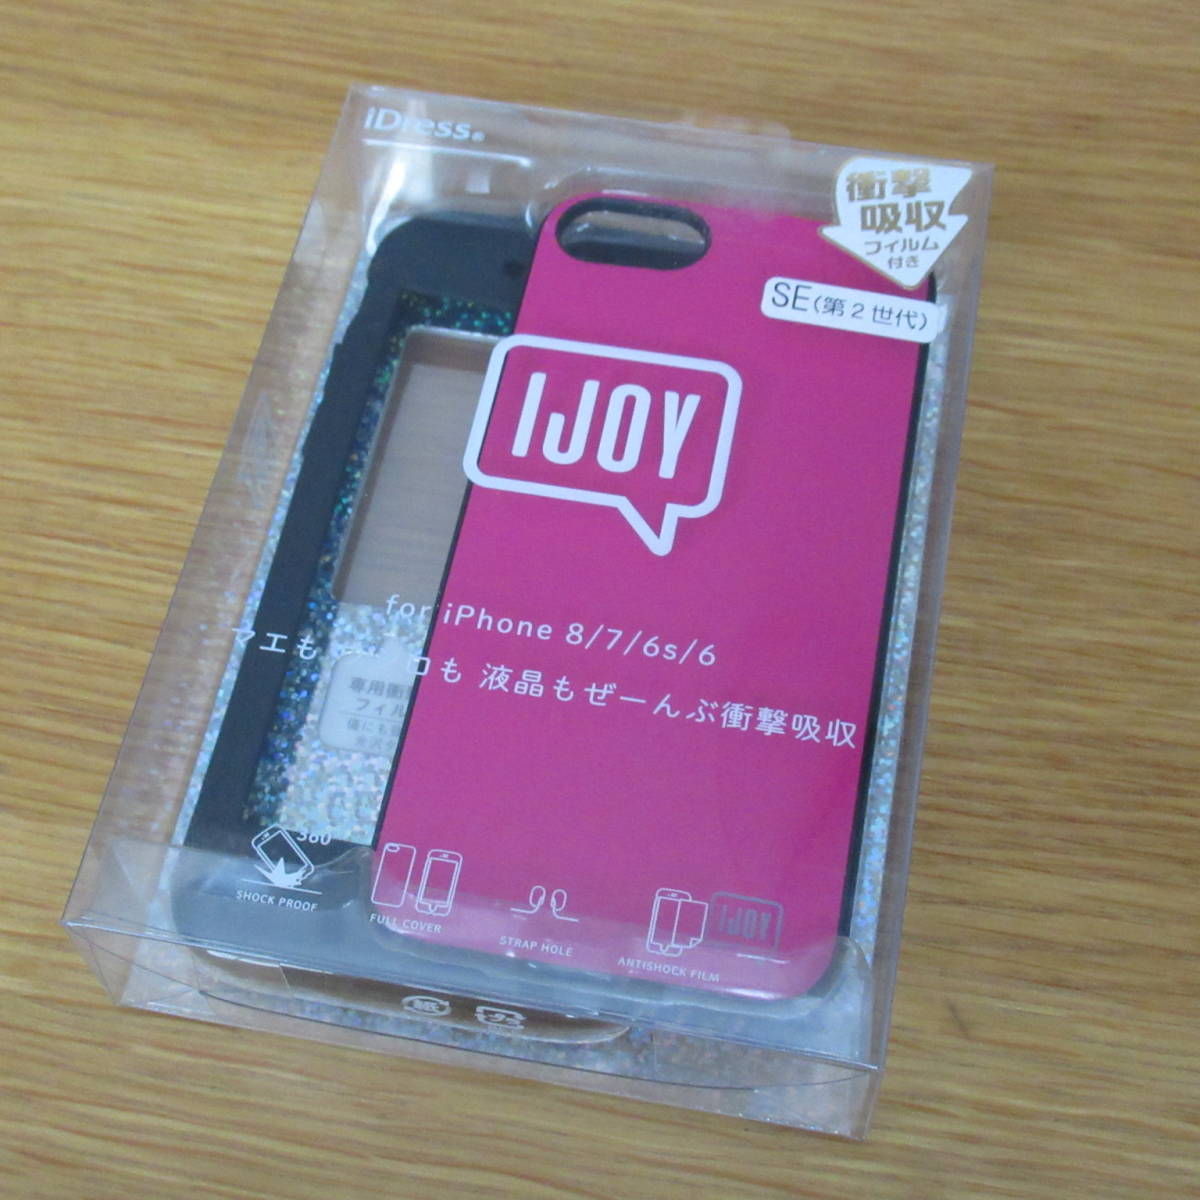 【未使用品】 iphone 携帯カバー 保護フィルム ケース フューシャピンク IJOY iPhone SE 第2、3世代 iPhone 8/7/6s/6対応 11_画像1